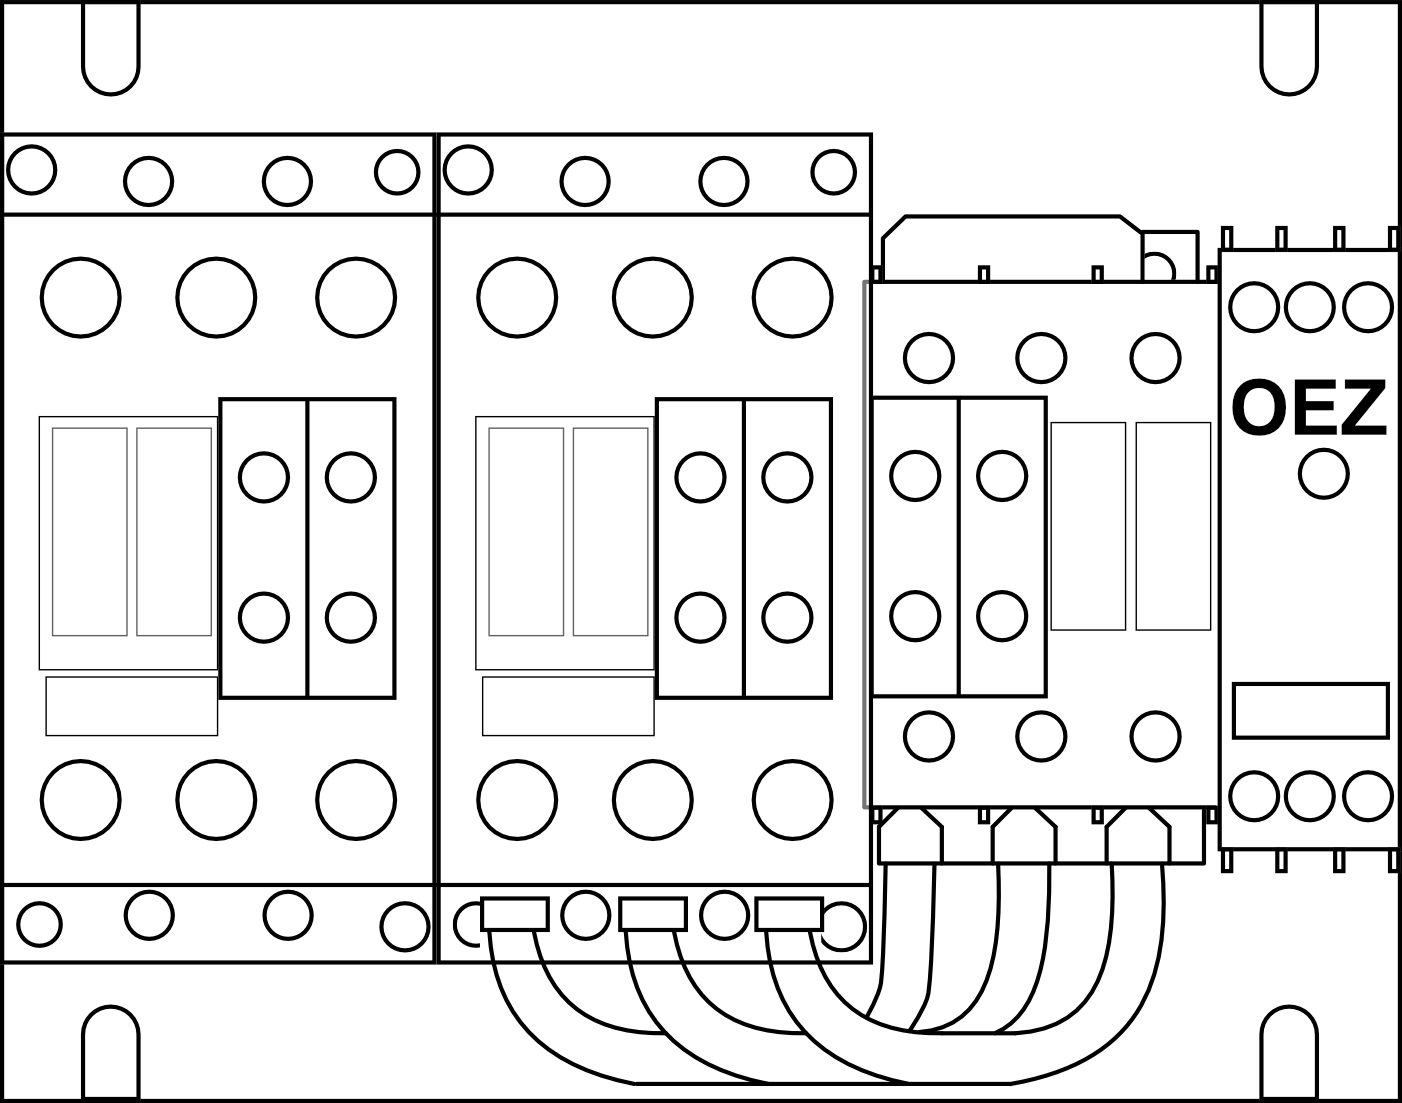 Stykačová kombinace spouštění Y/D OEZ Conteo 3RA1434-8XC21-1AL2 velikost 50-50-25, 50/65A, ovládací napětí 230V AC